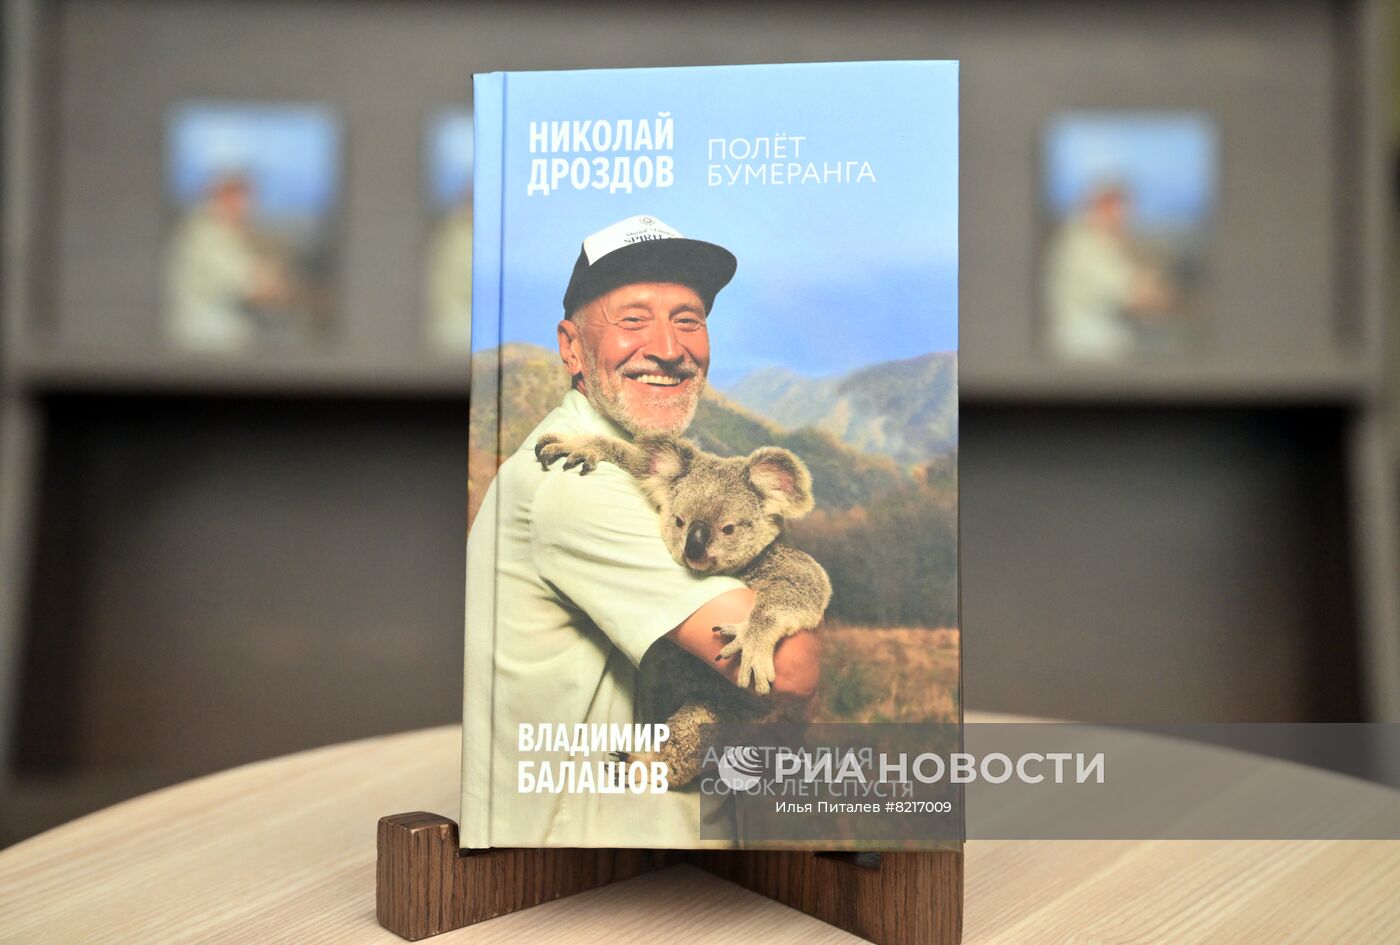 Презентация книги Н. Дроздова "Полет бумеранга"